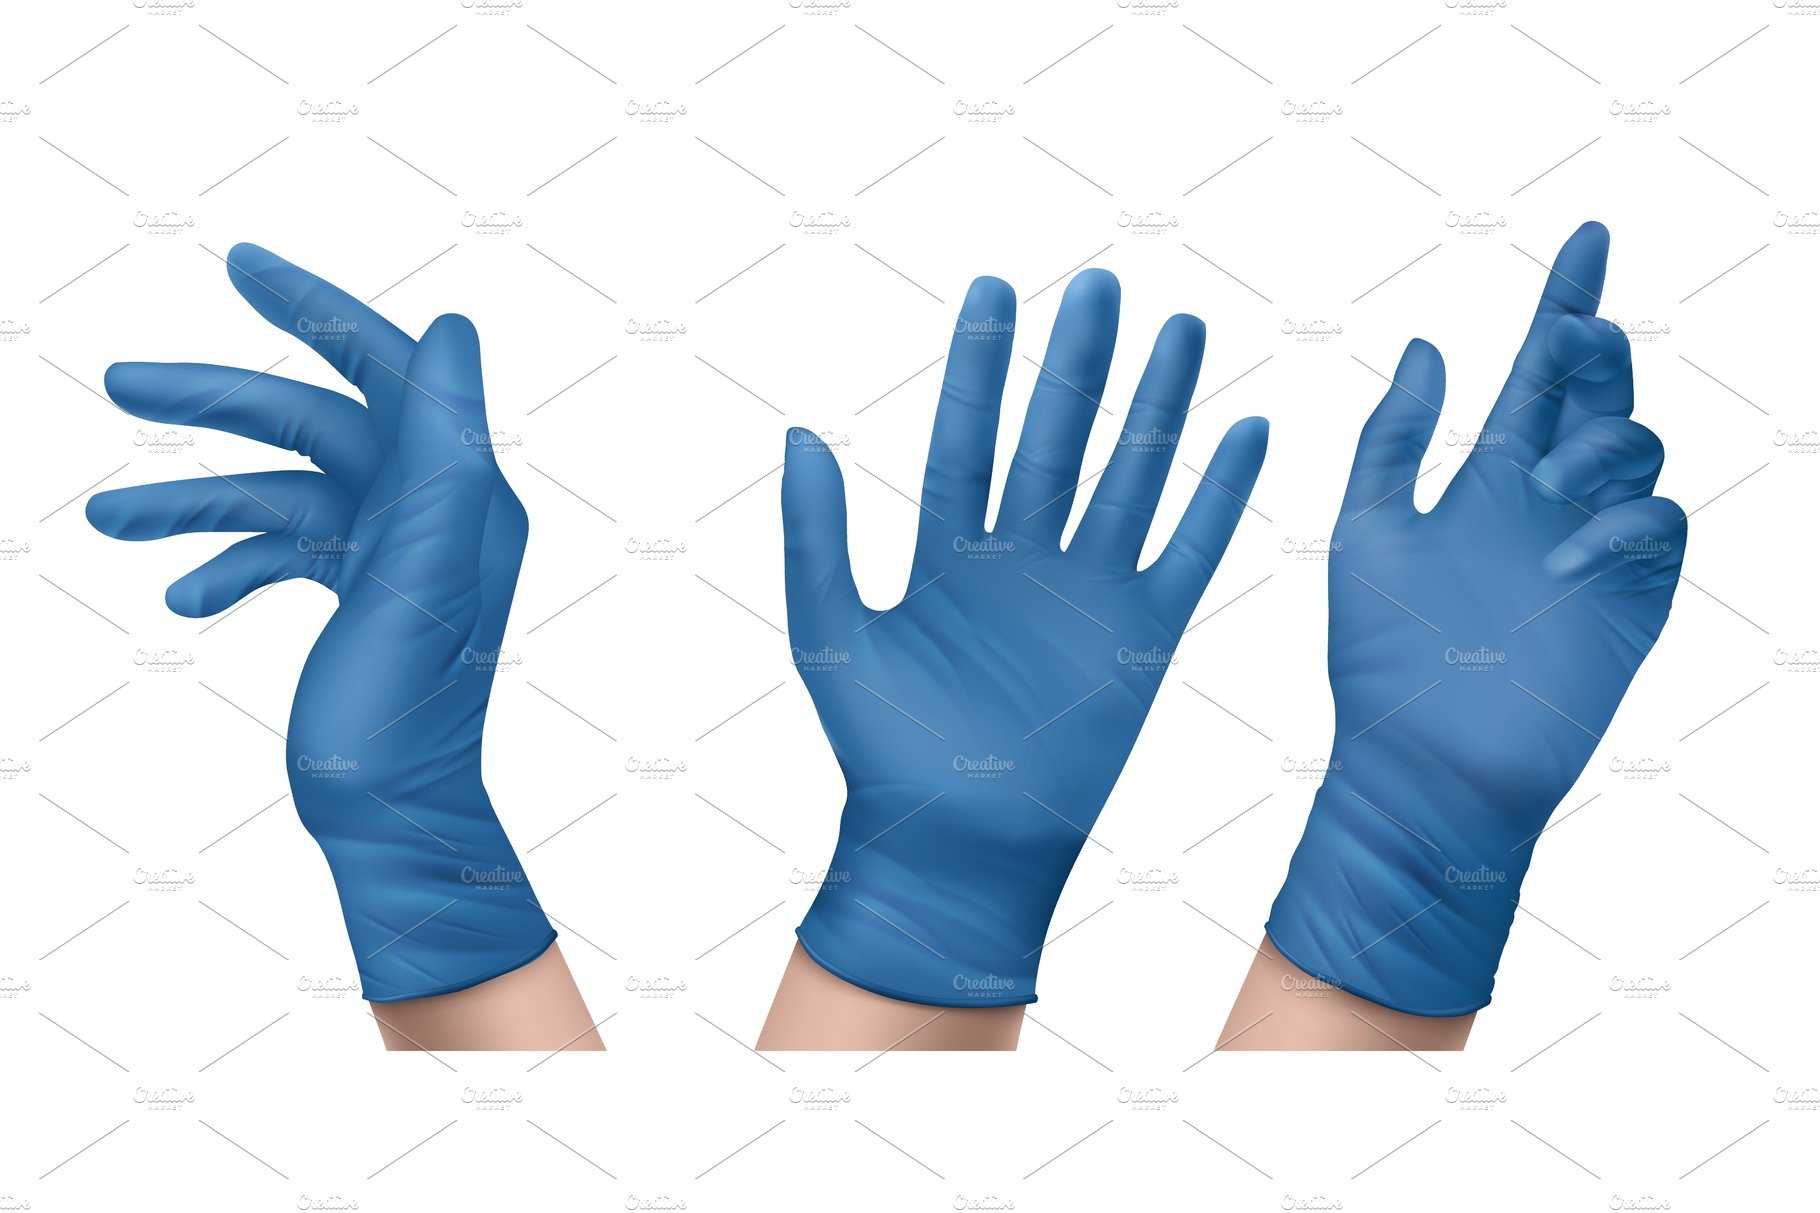 Blue nitrile medical gloves on hands cover image.